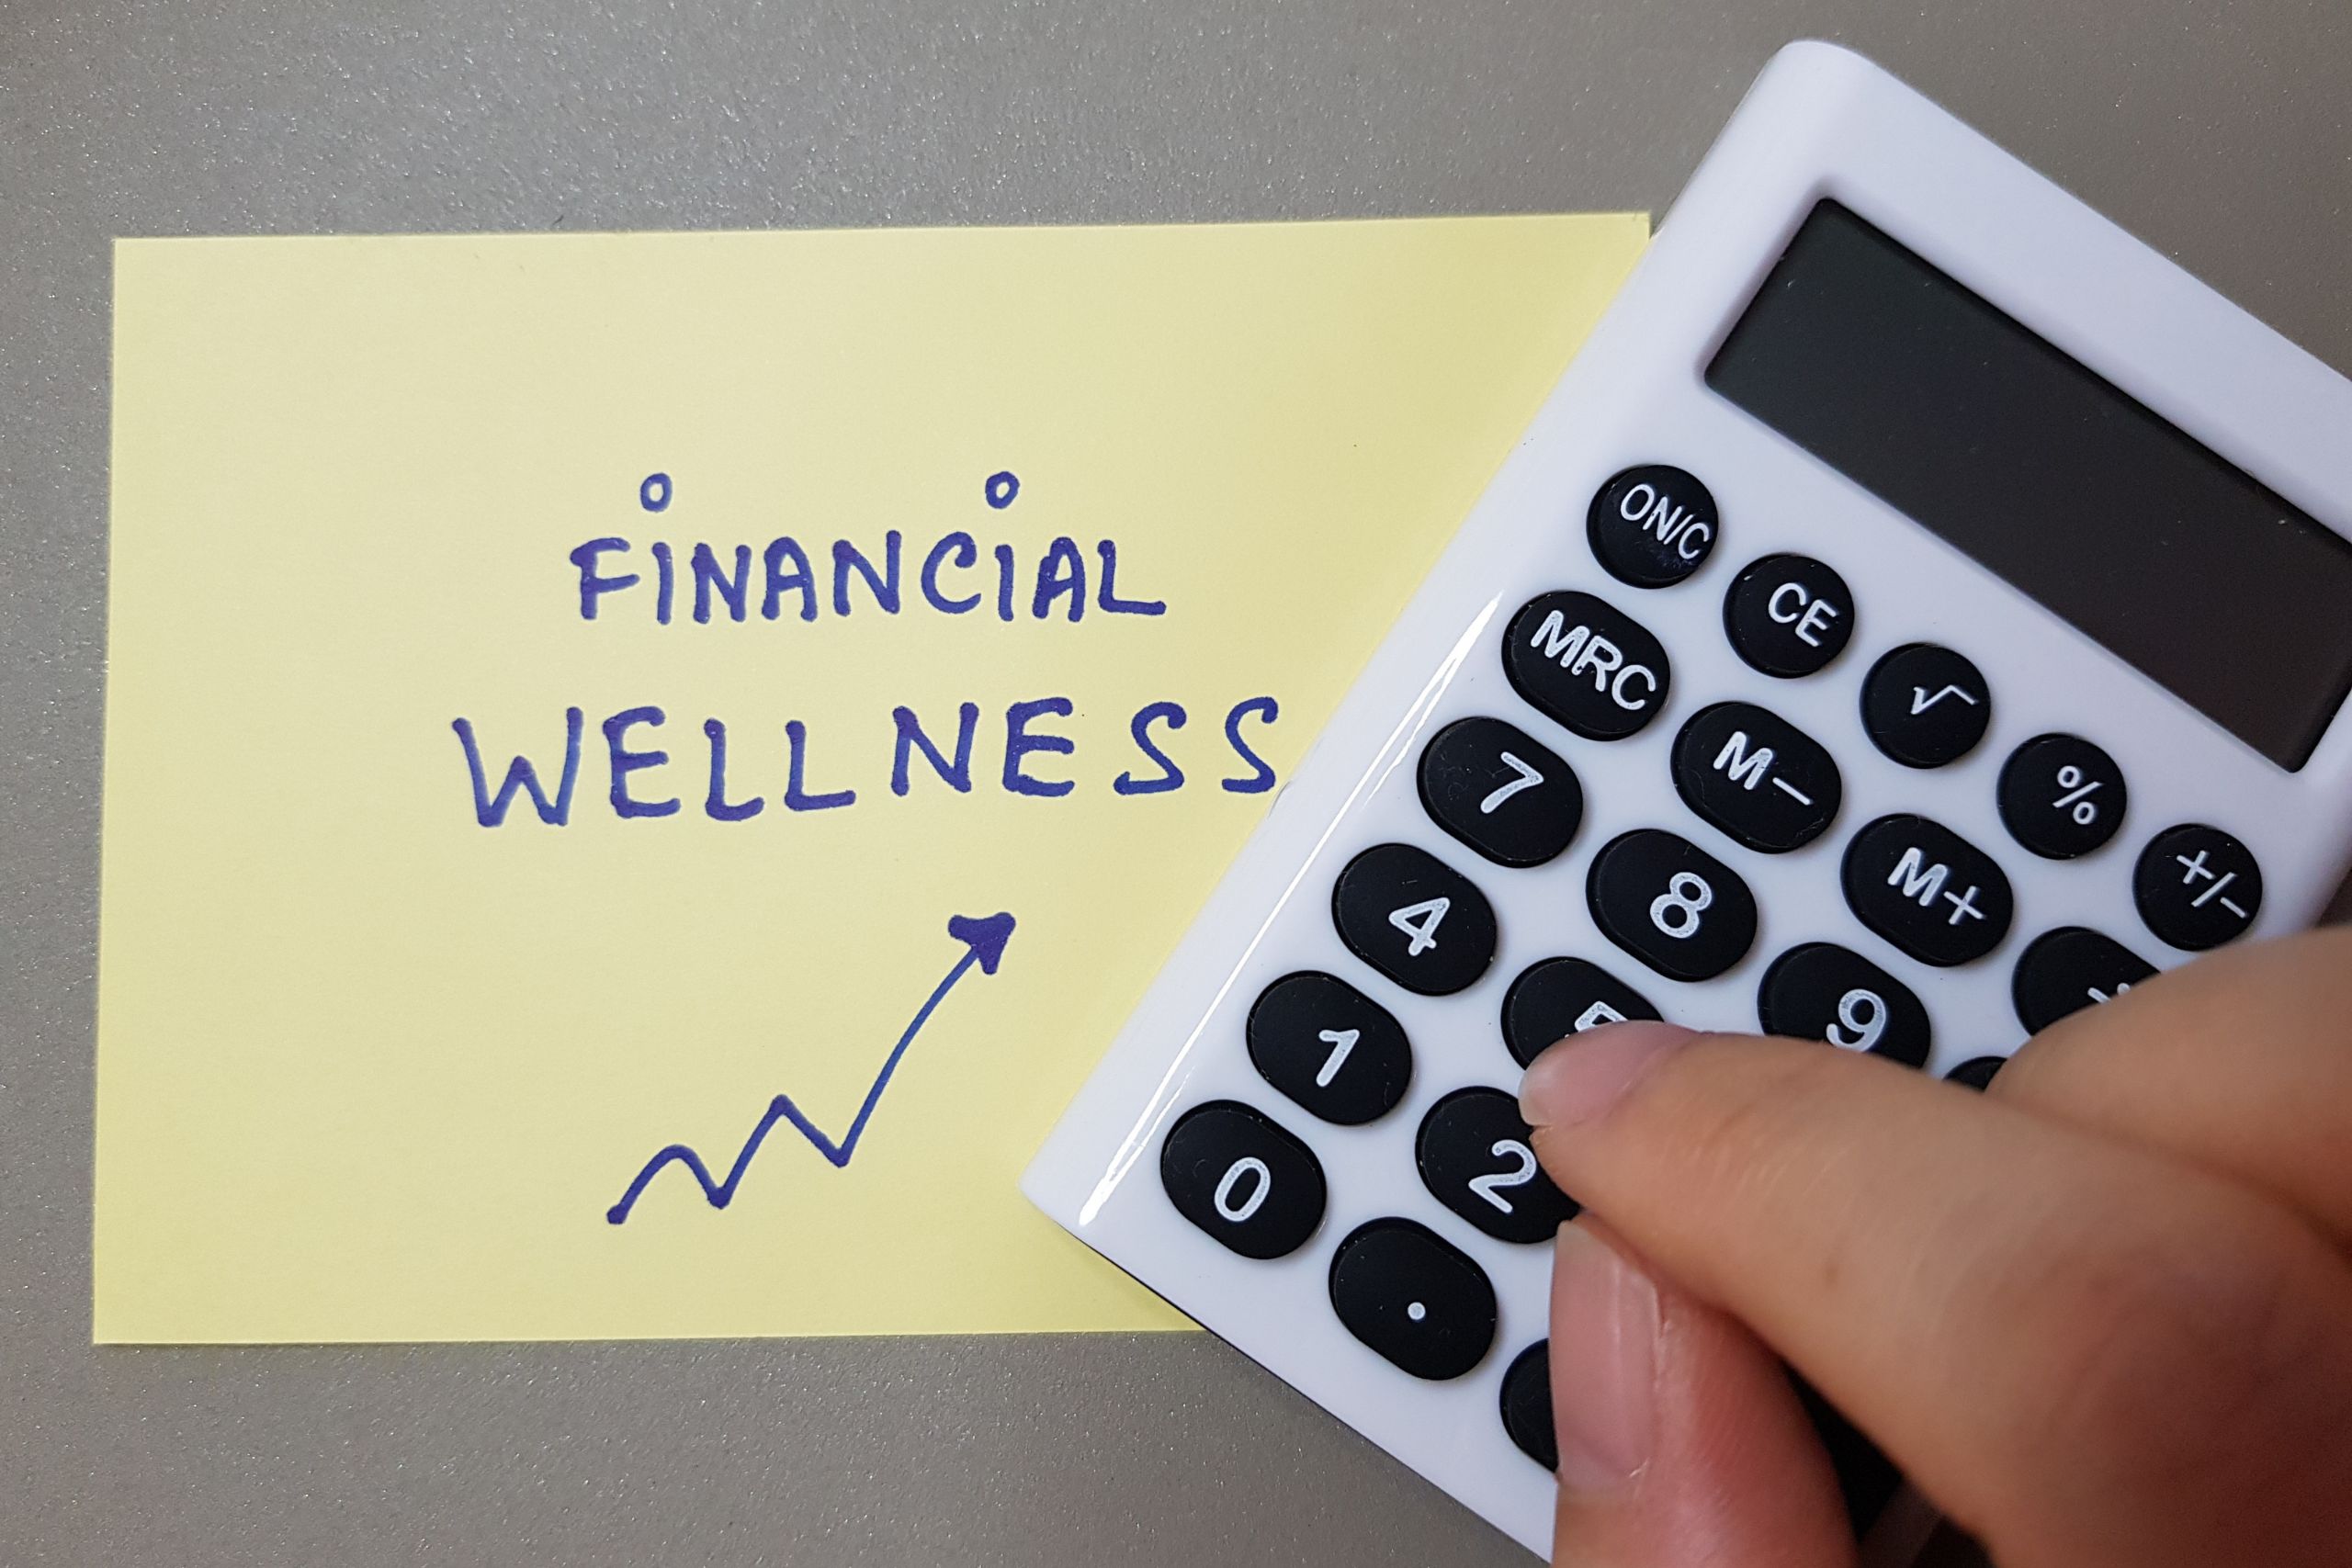 financial wellness management planning literacy